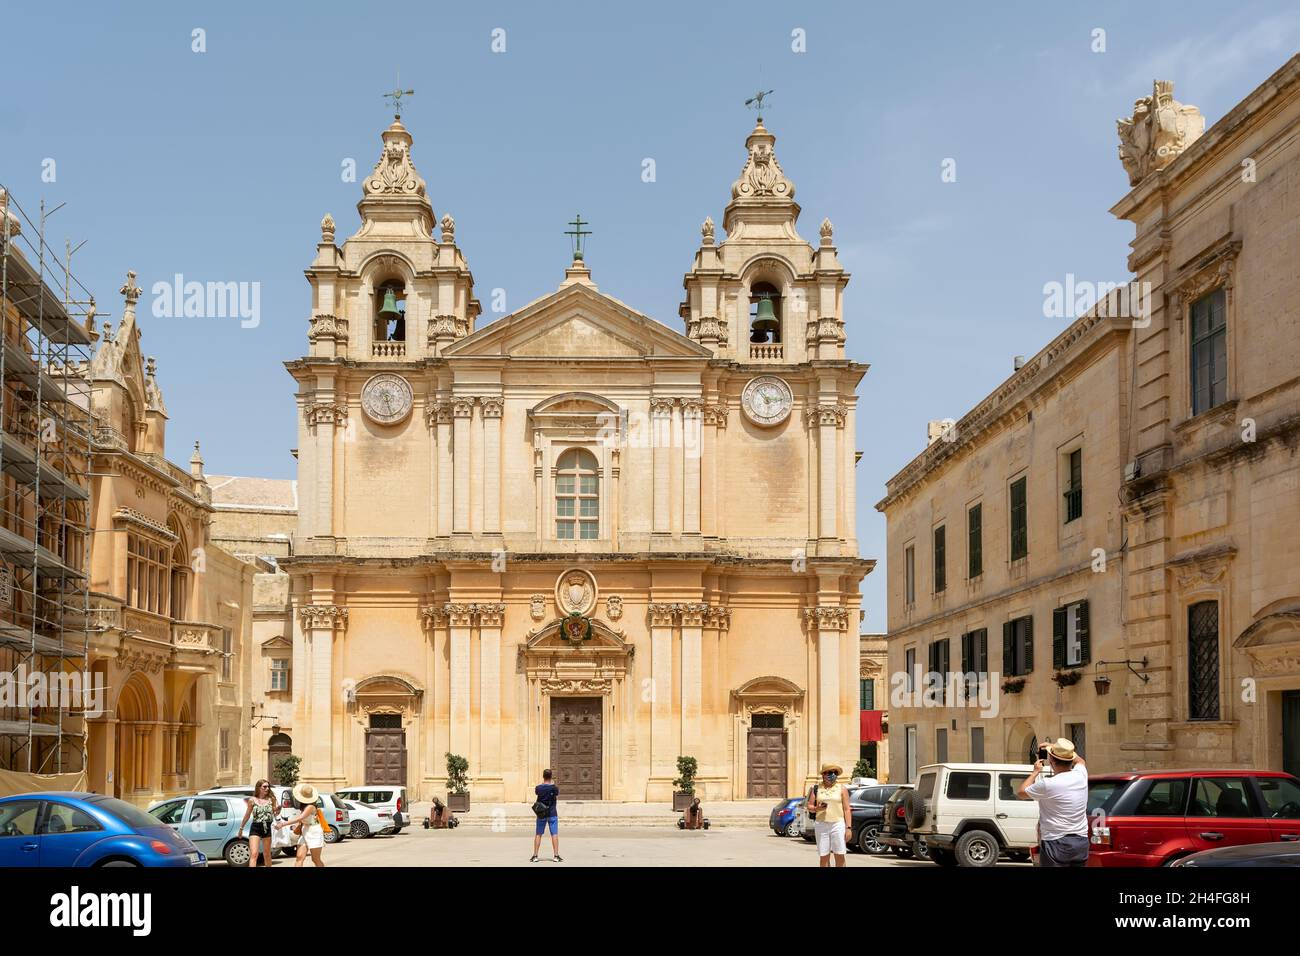 Les touristes se promenant sur la place Saint-Paul avant l'entrée de la cathédrale Saint-Paul, construite dans le style baroque, avec des influences de l'architecture maltaise indigène Banque D'Images